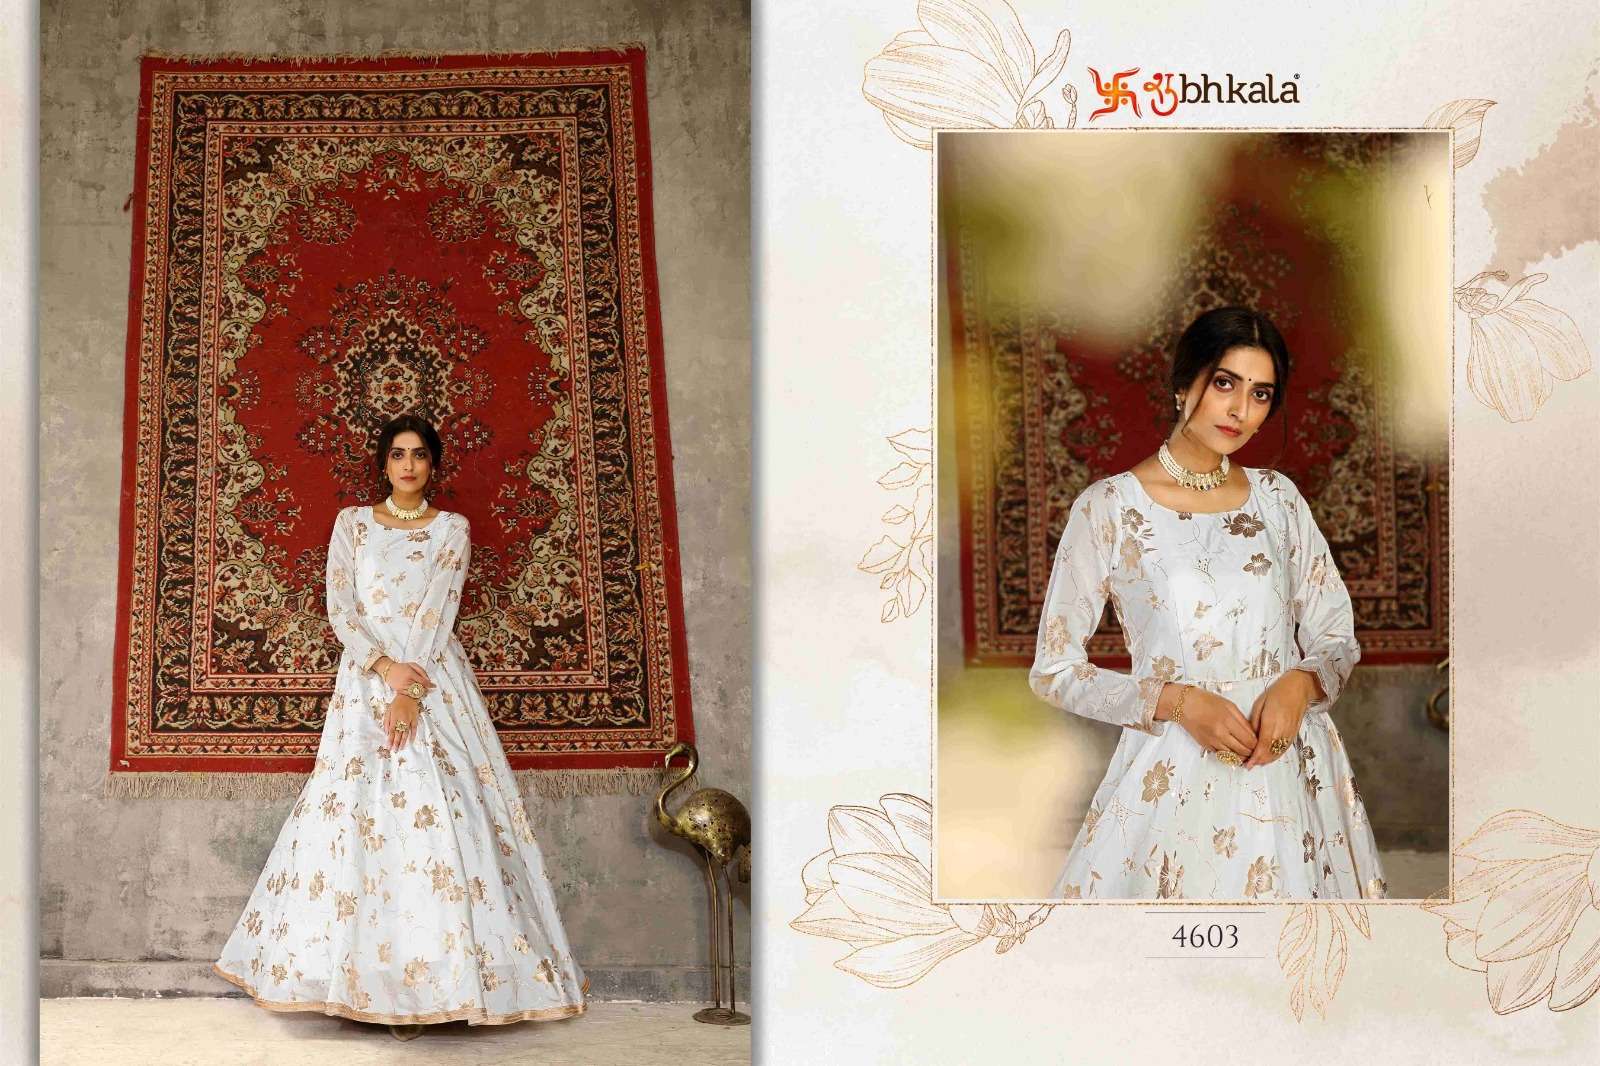 Shyamal & Bhumika Flagship Stores in Mumbai, Delhi and Ahmedabad. . Mumba |  Indian wedding fashion, Indian wedding gowns, Indian gowns dresses